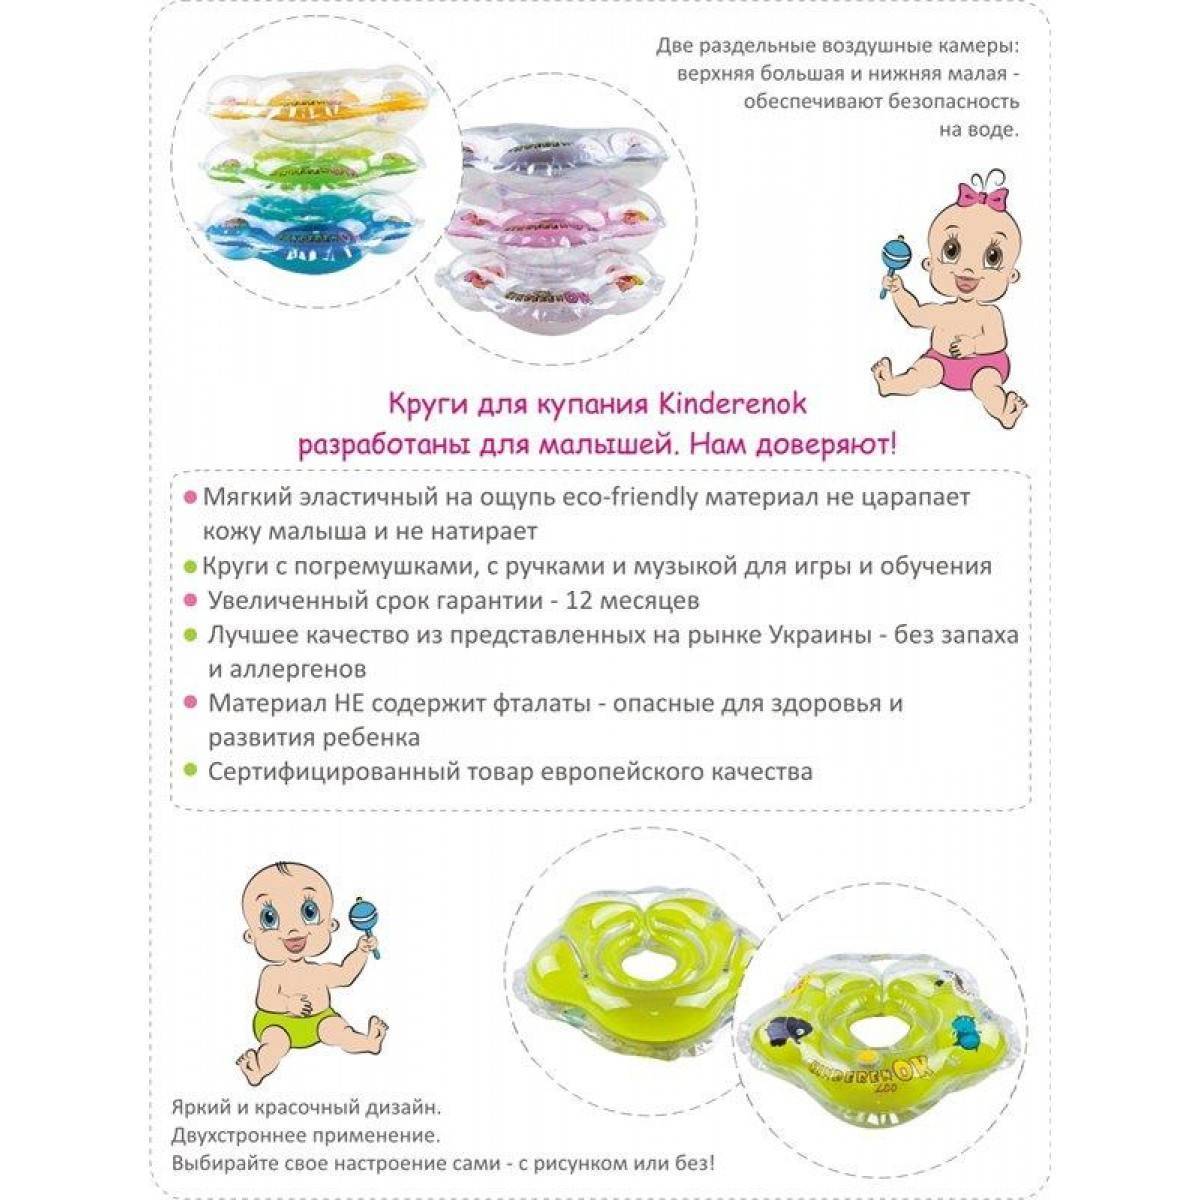 Шпаргалка для мам: 12 правил купания новорождённого - медицинский портал